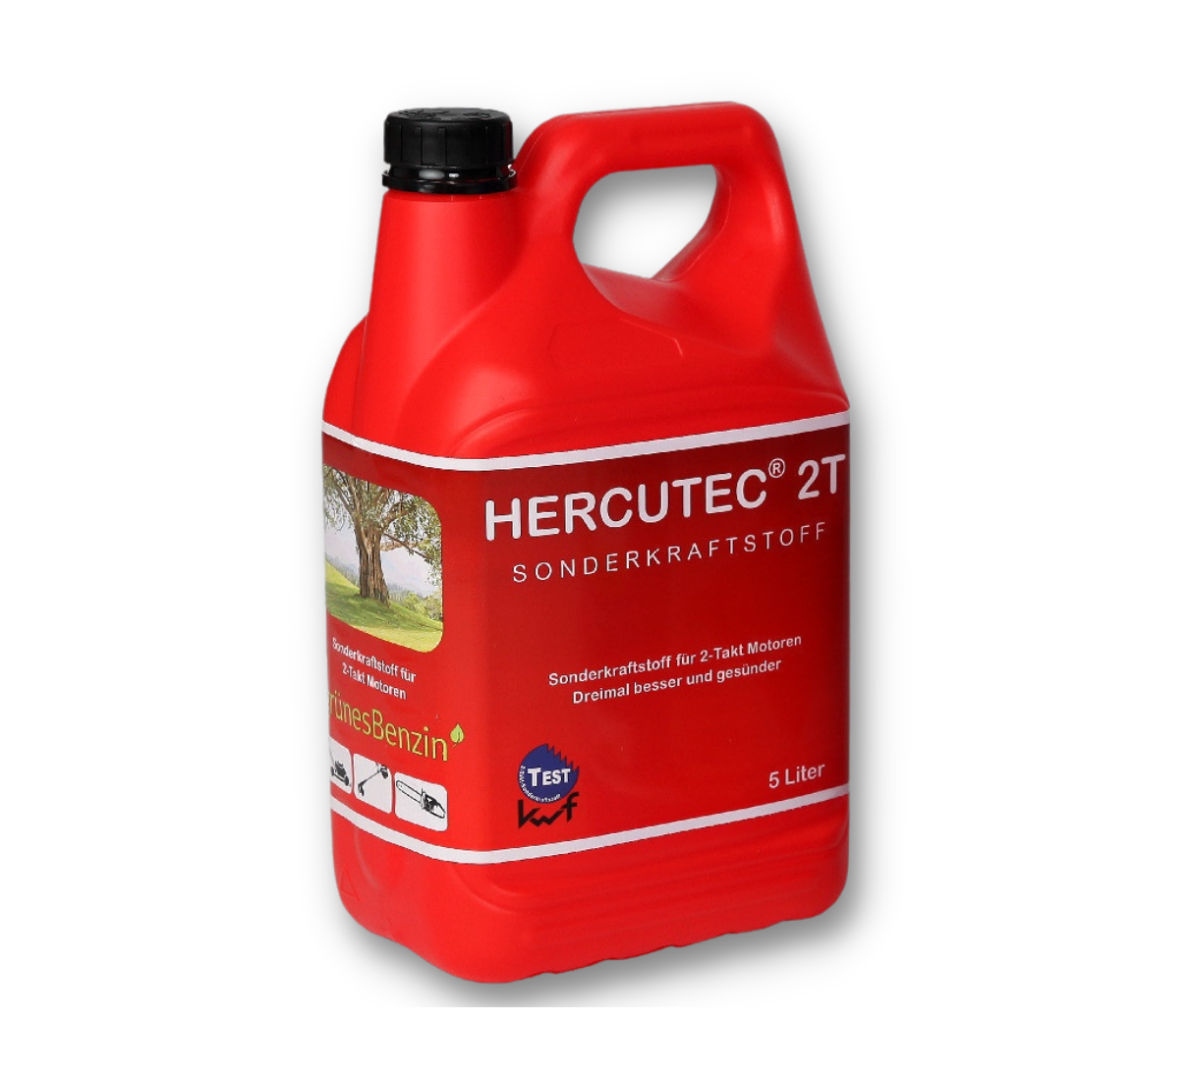 Hercutec 2-takt Alkylaatbrandstof, 5 Liter